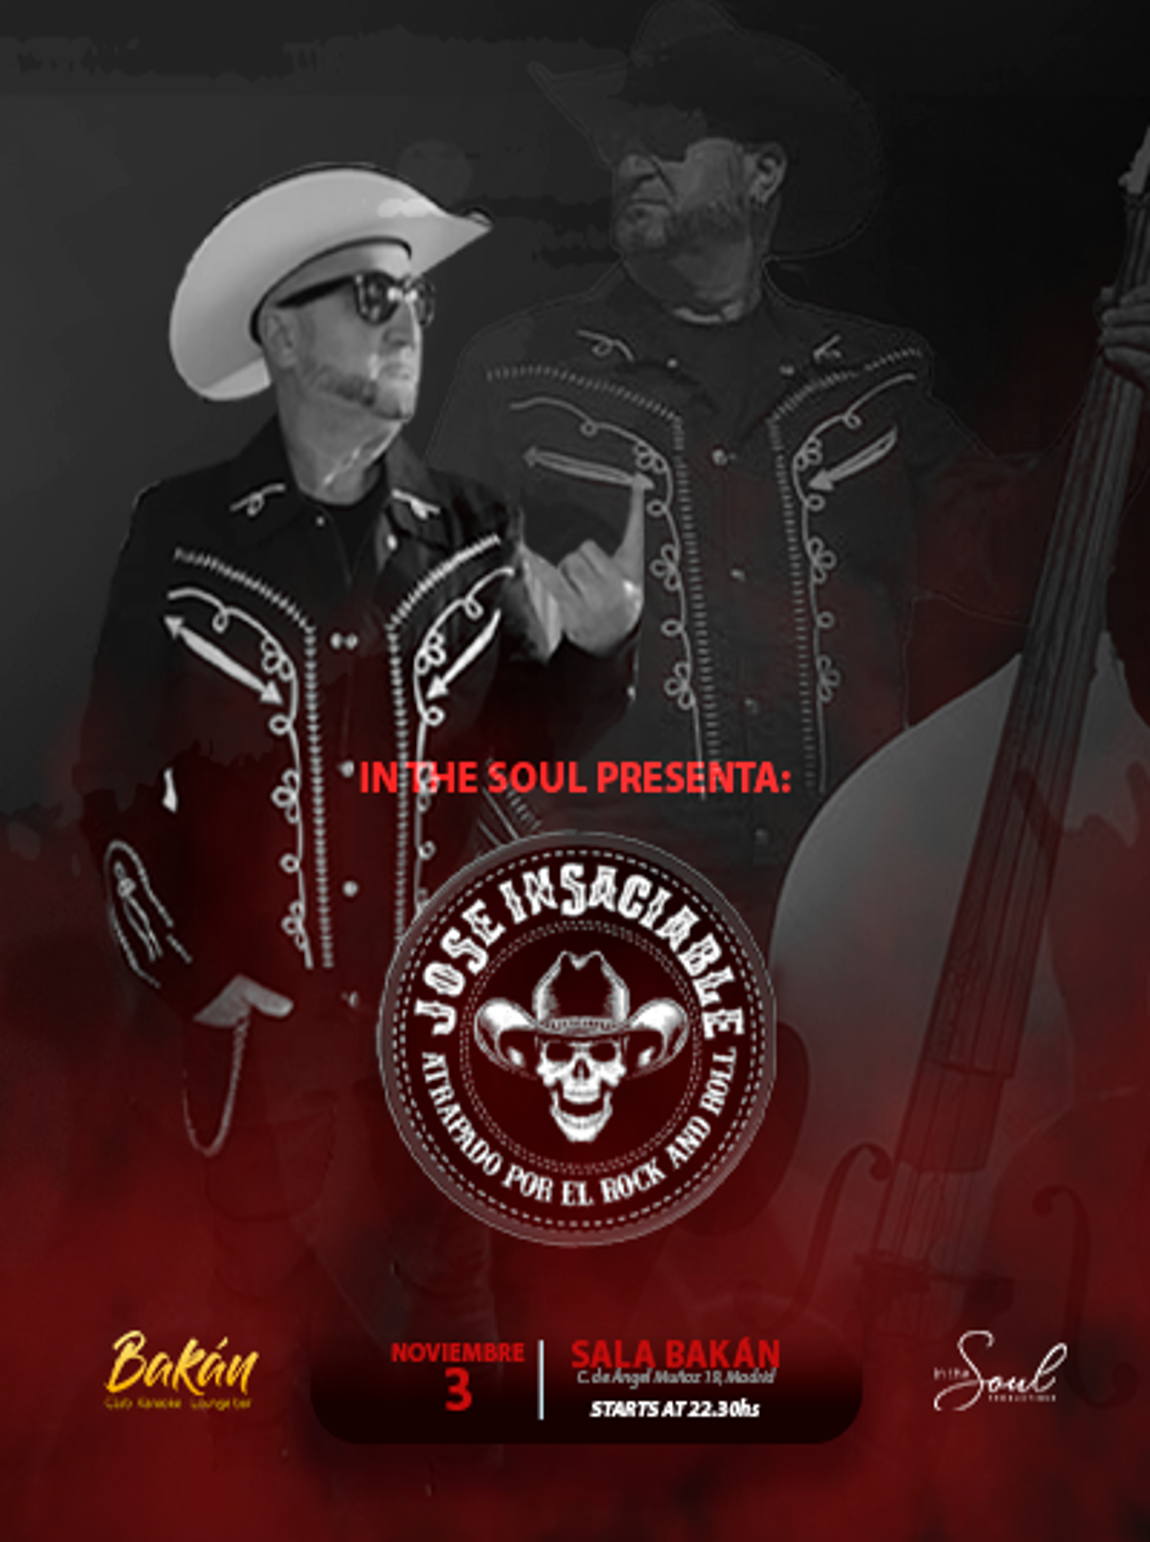 CANCELADO In the Soul: José Insaciable - Rock and Roll Night en Bakán Madrid - Mutick